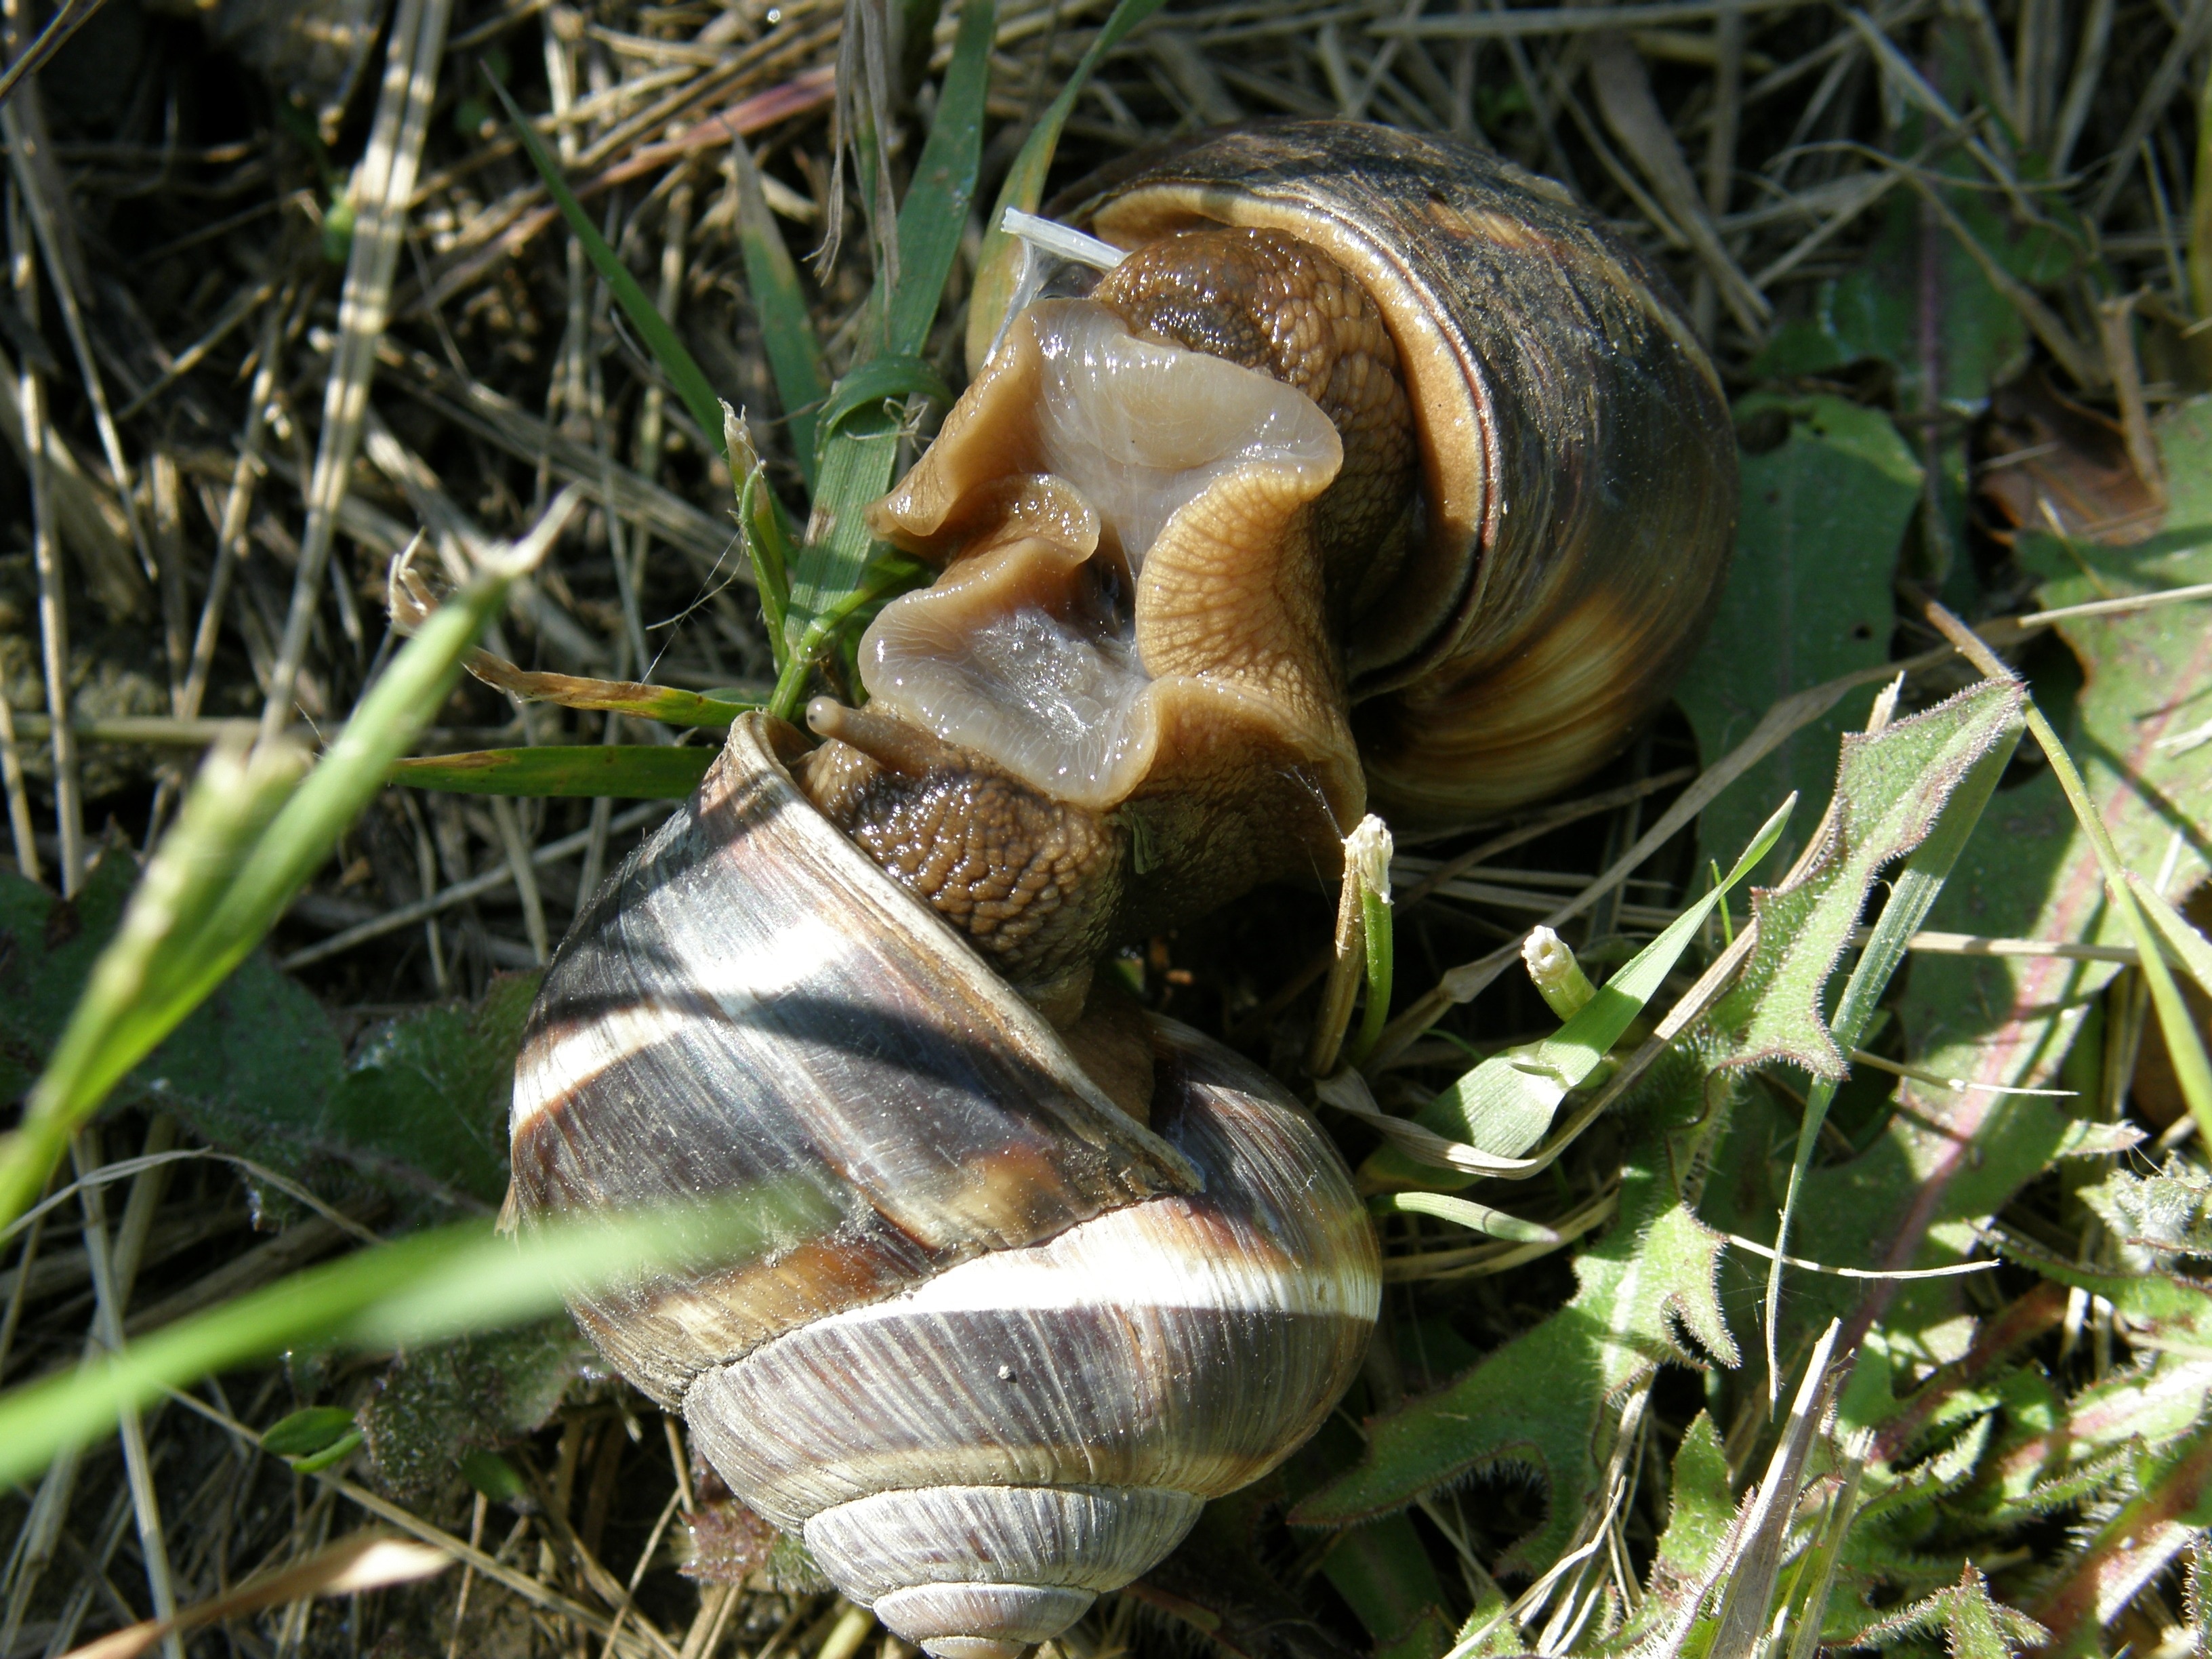 2 garden snails